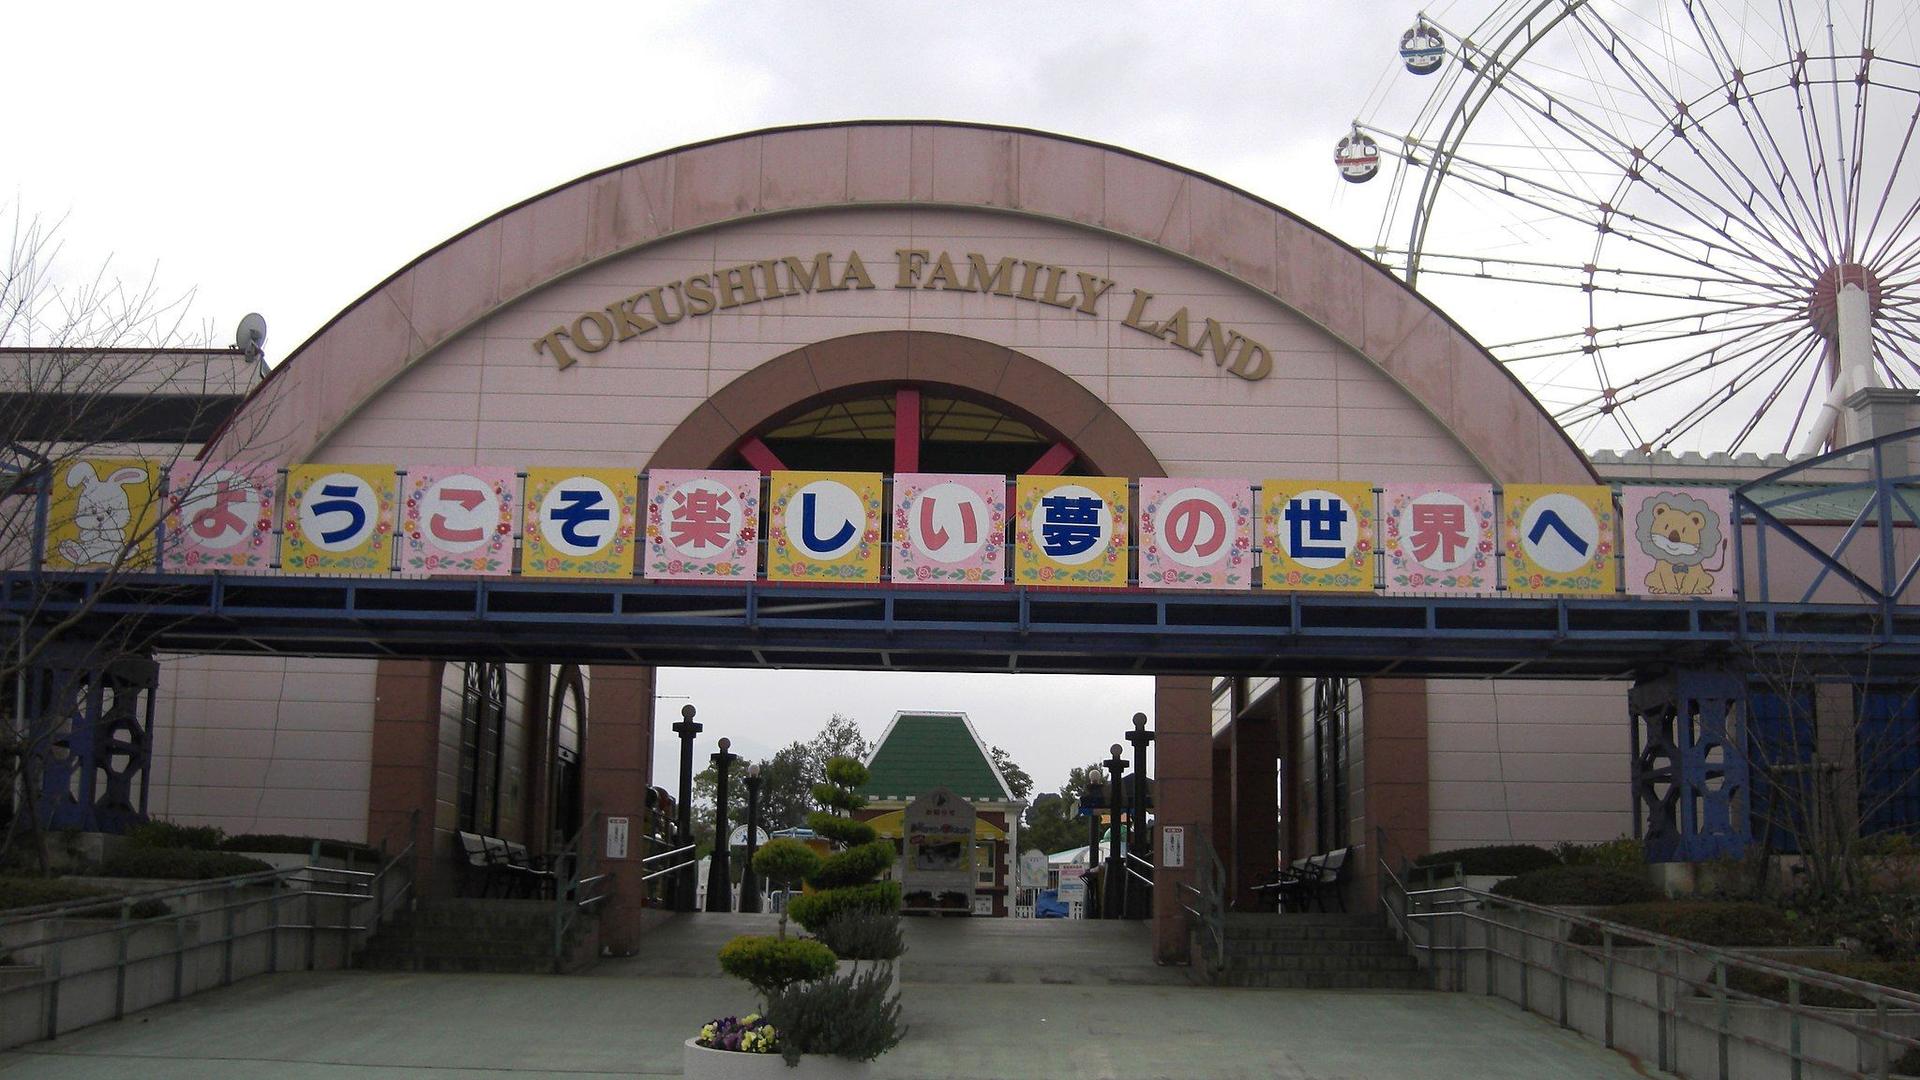 Tokushima Family Land